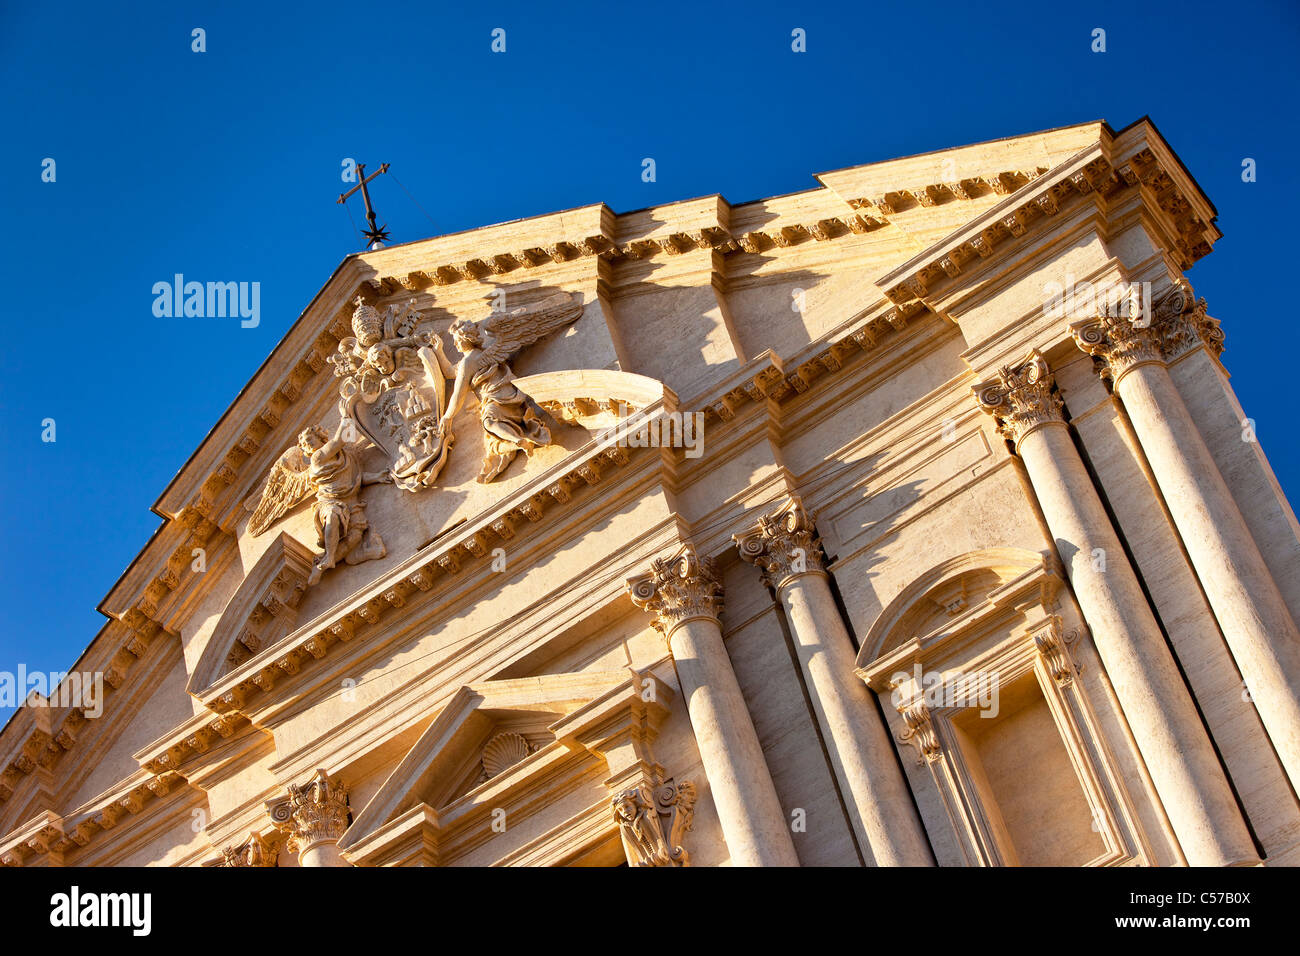 Facade of Sant Andrea Della Valle near Piazza Navona, Rome Lazio Italy Stock Photo